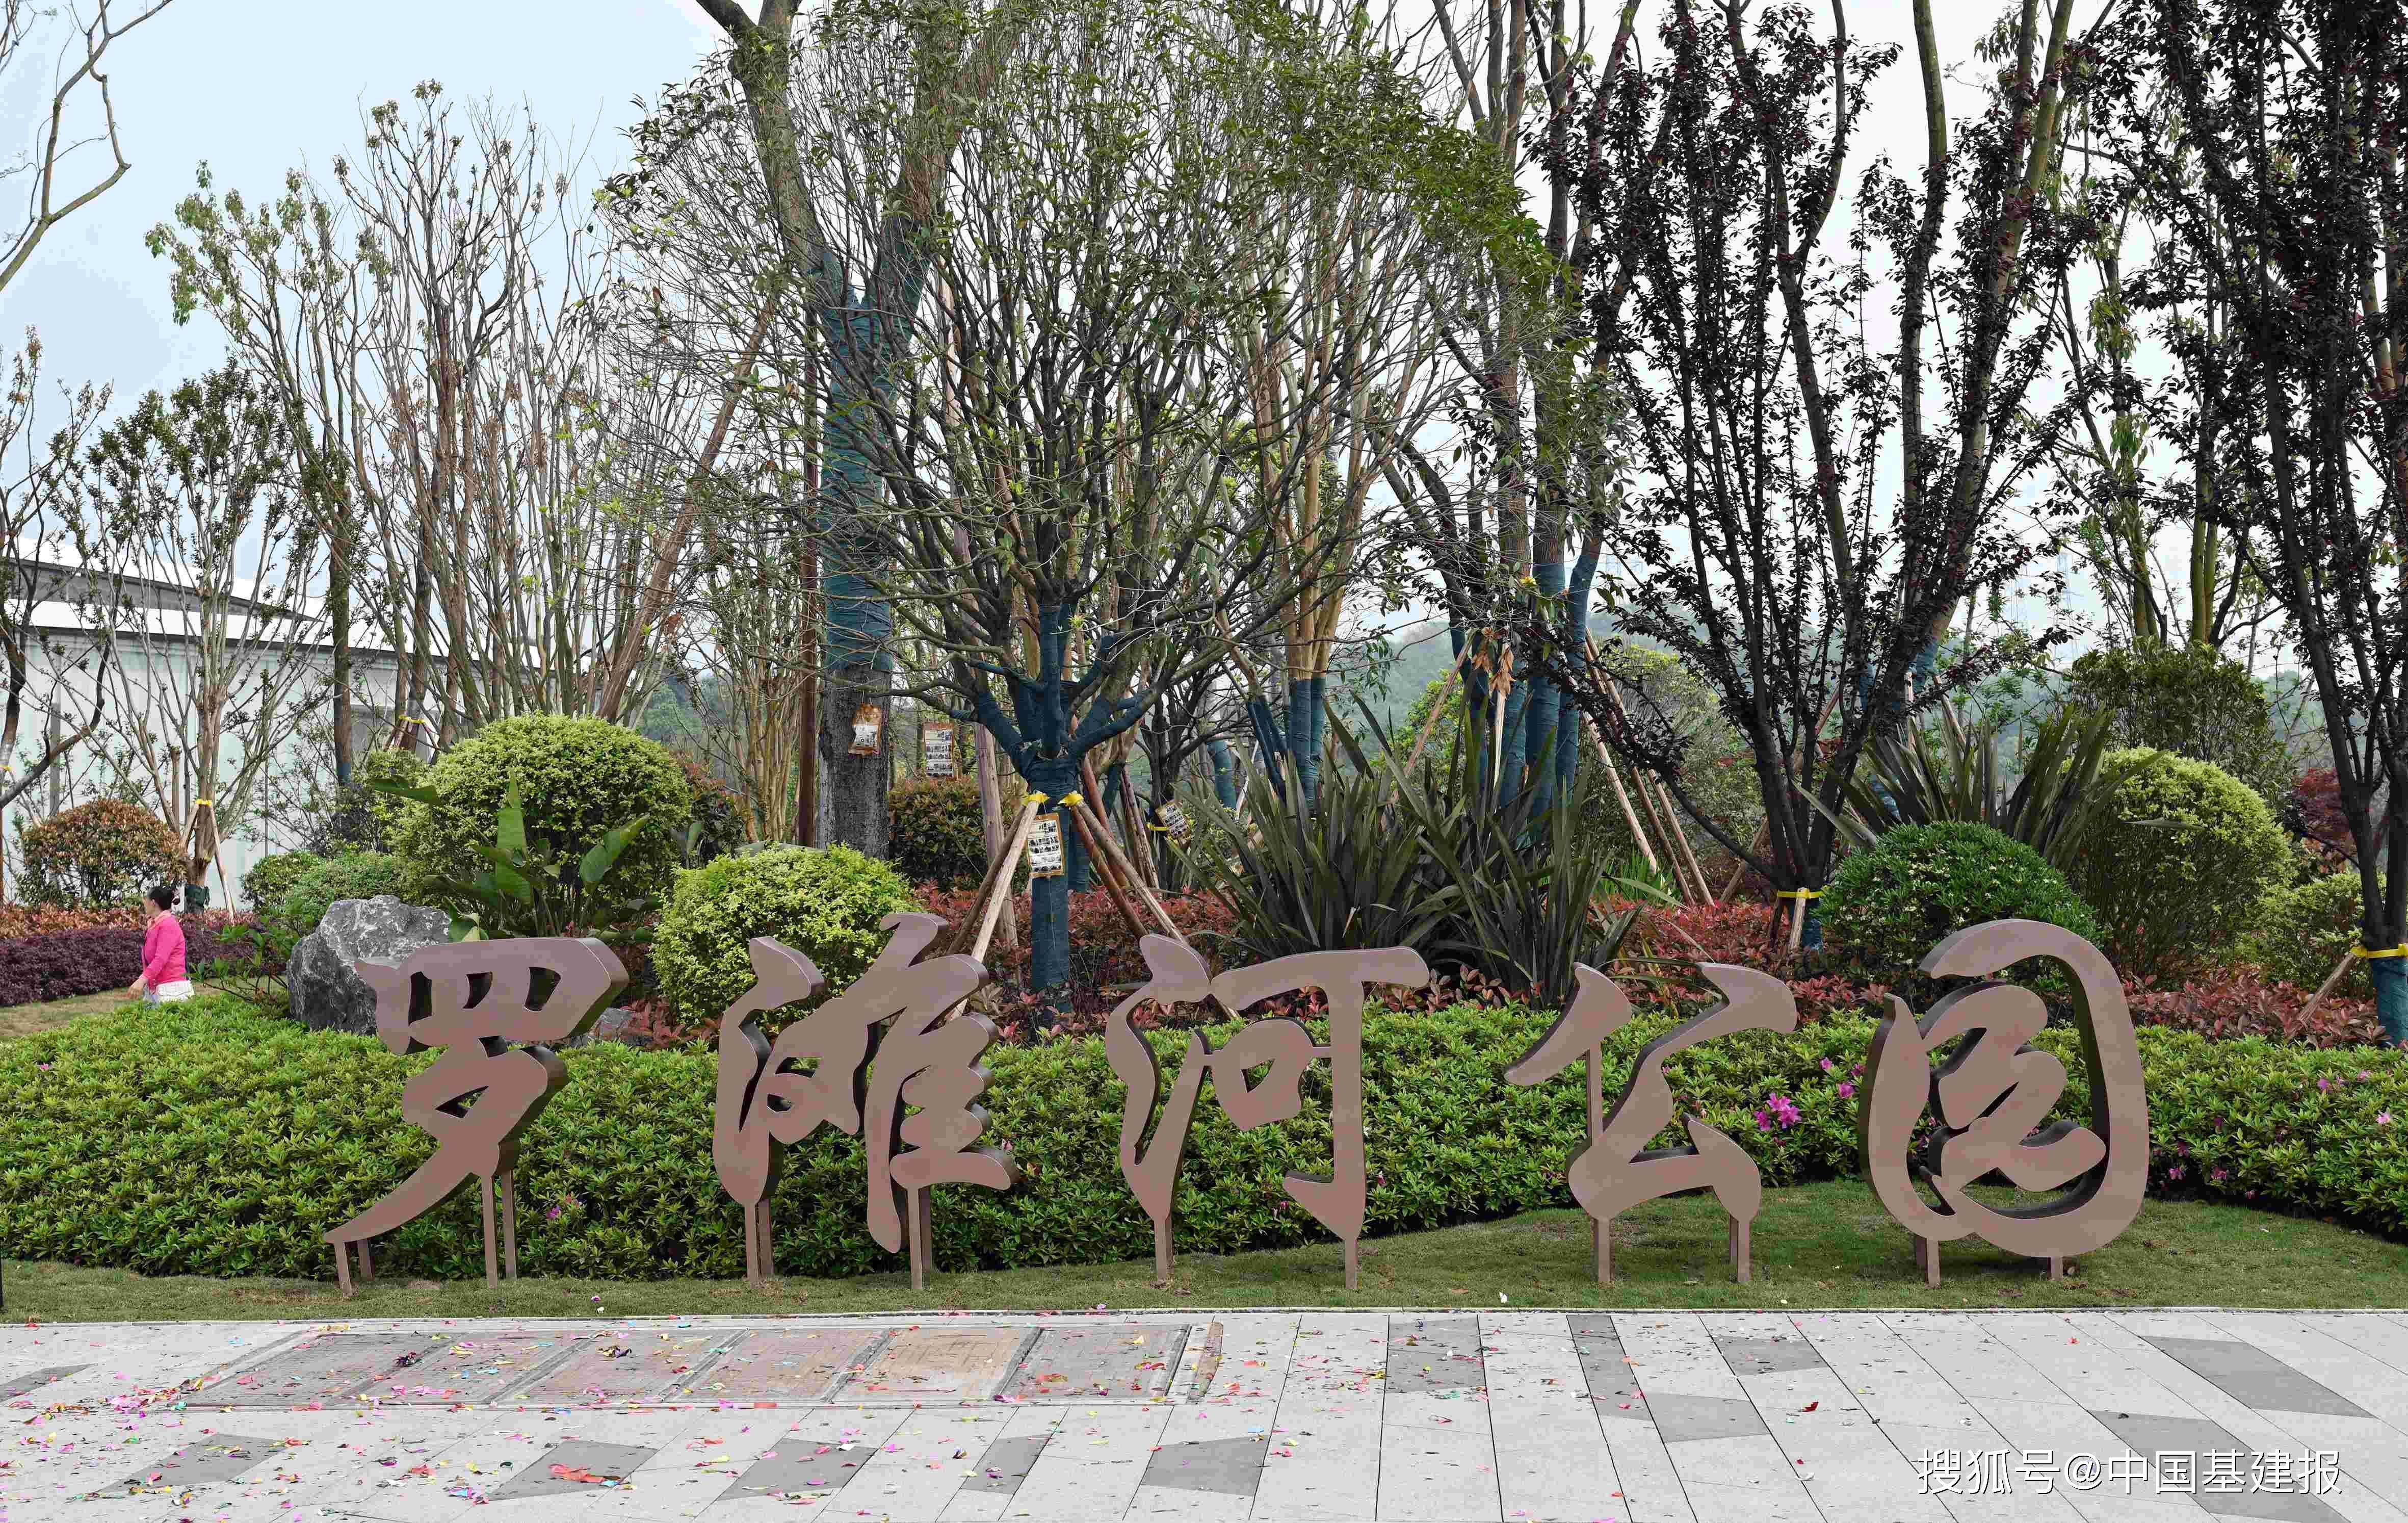 重庆巴南区首届公园乐活节暨罗滩河公园盛大开放